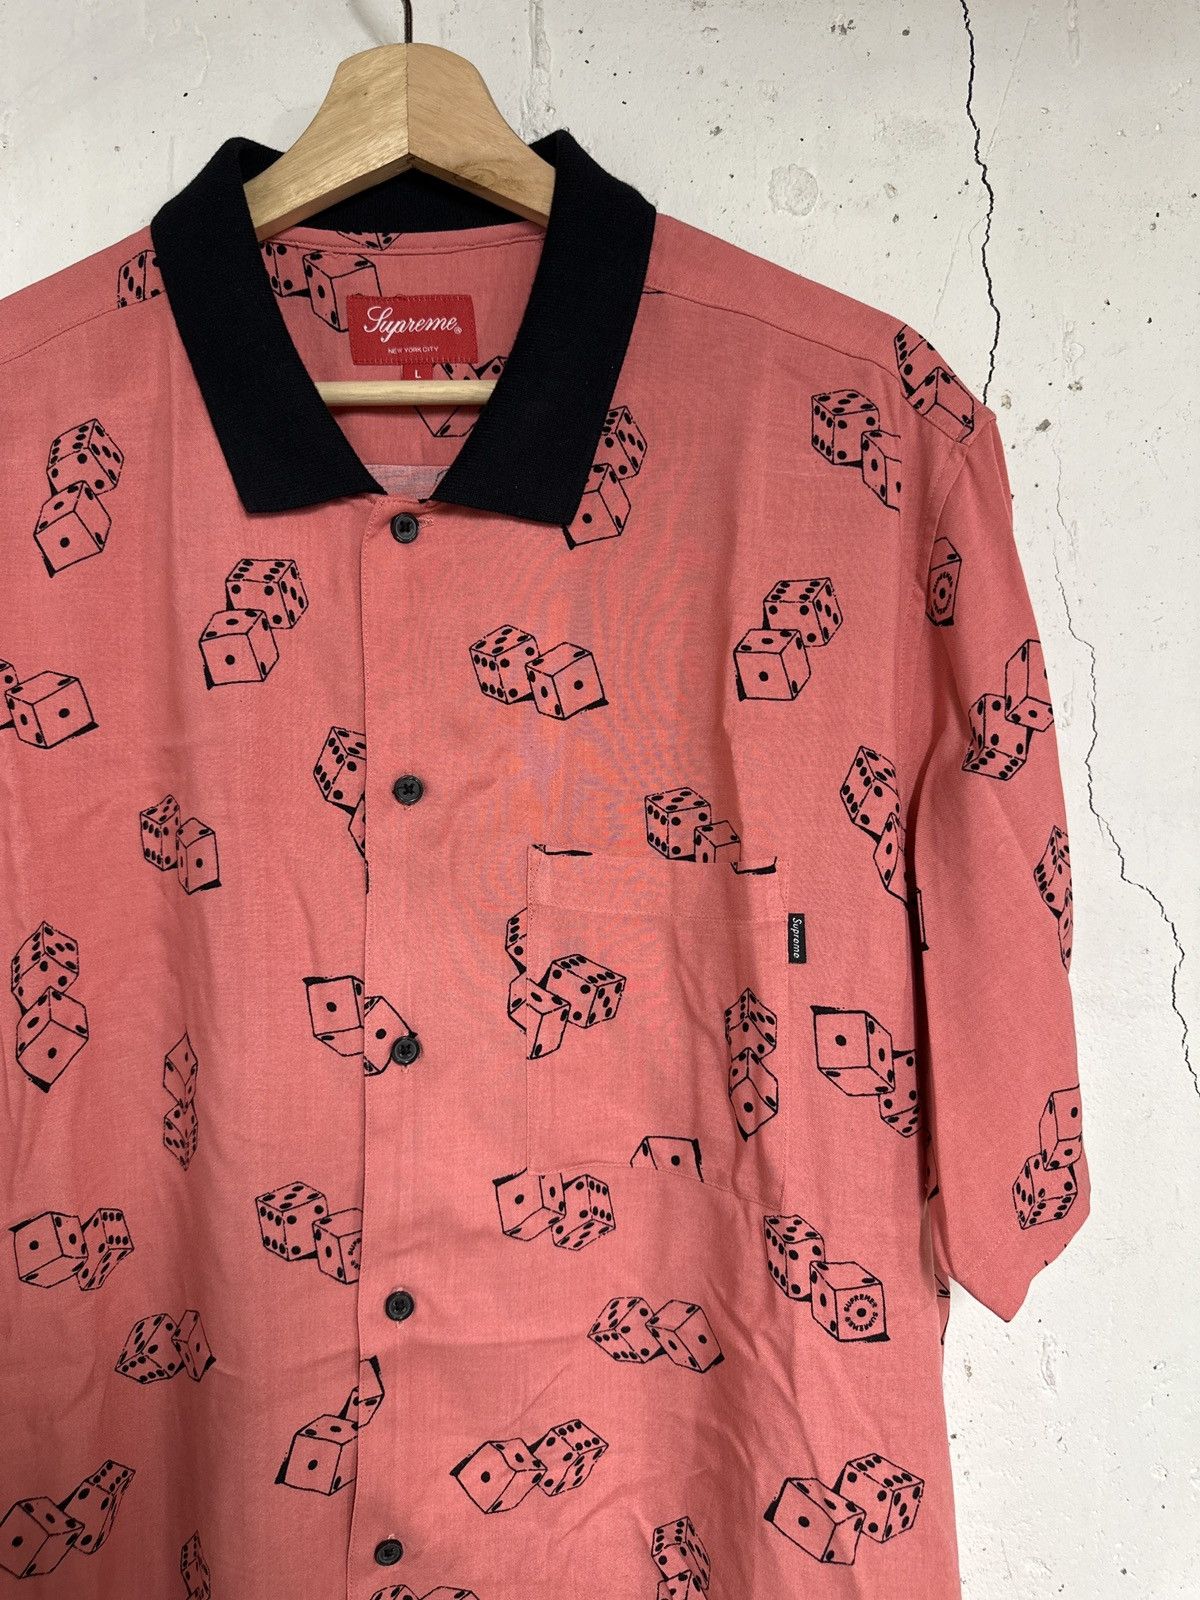 Supreme Supreme Rayon Dice Shirt Pink Large | Grailed